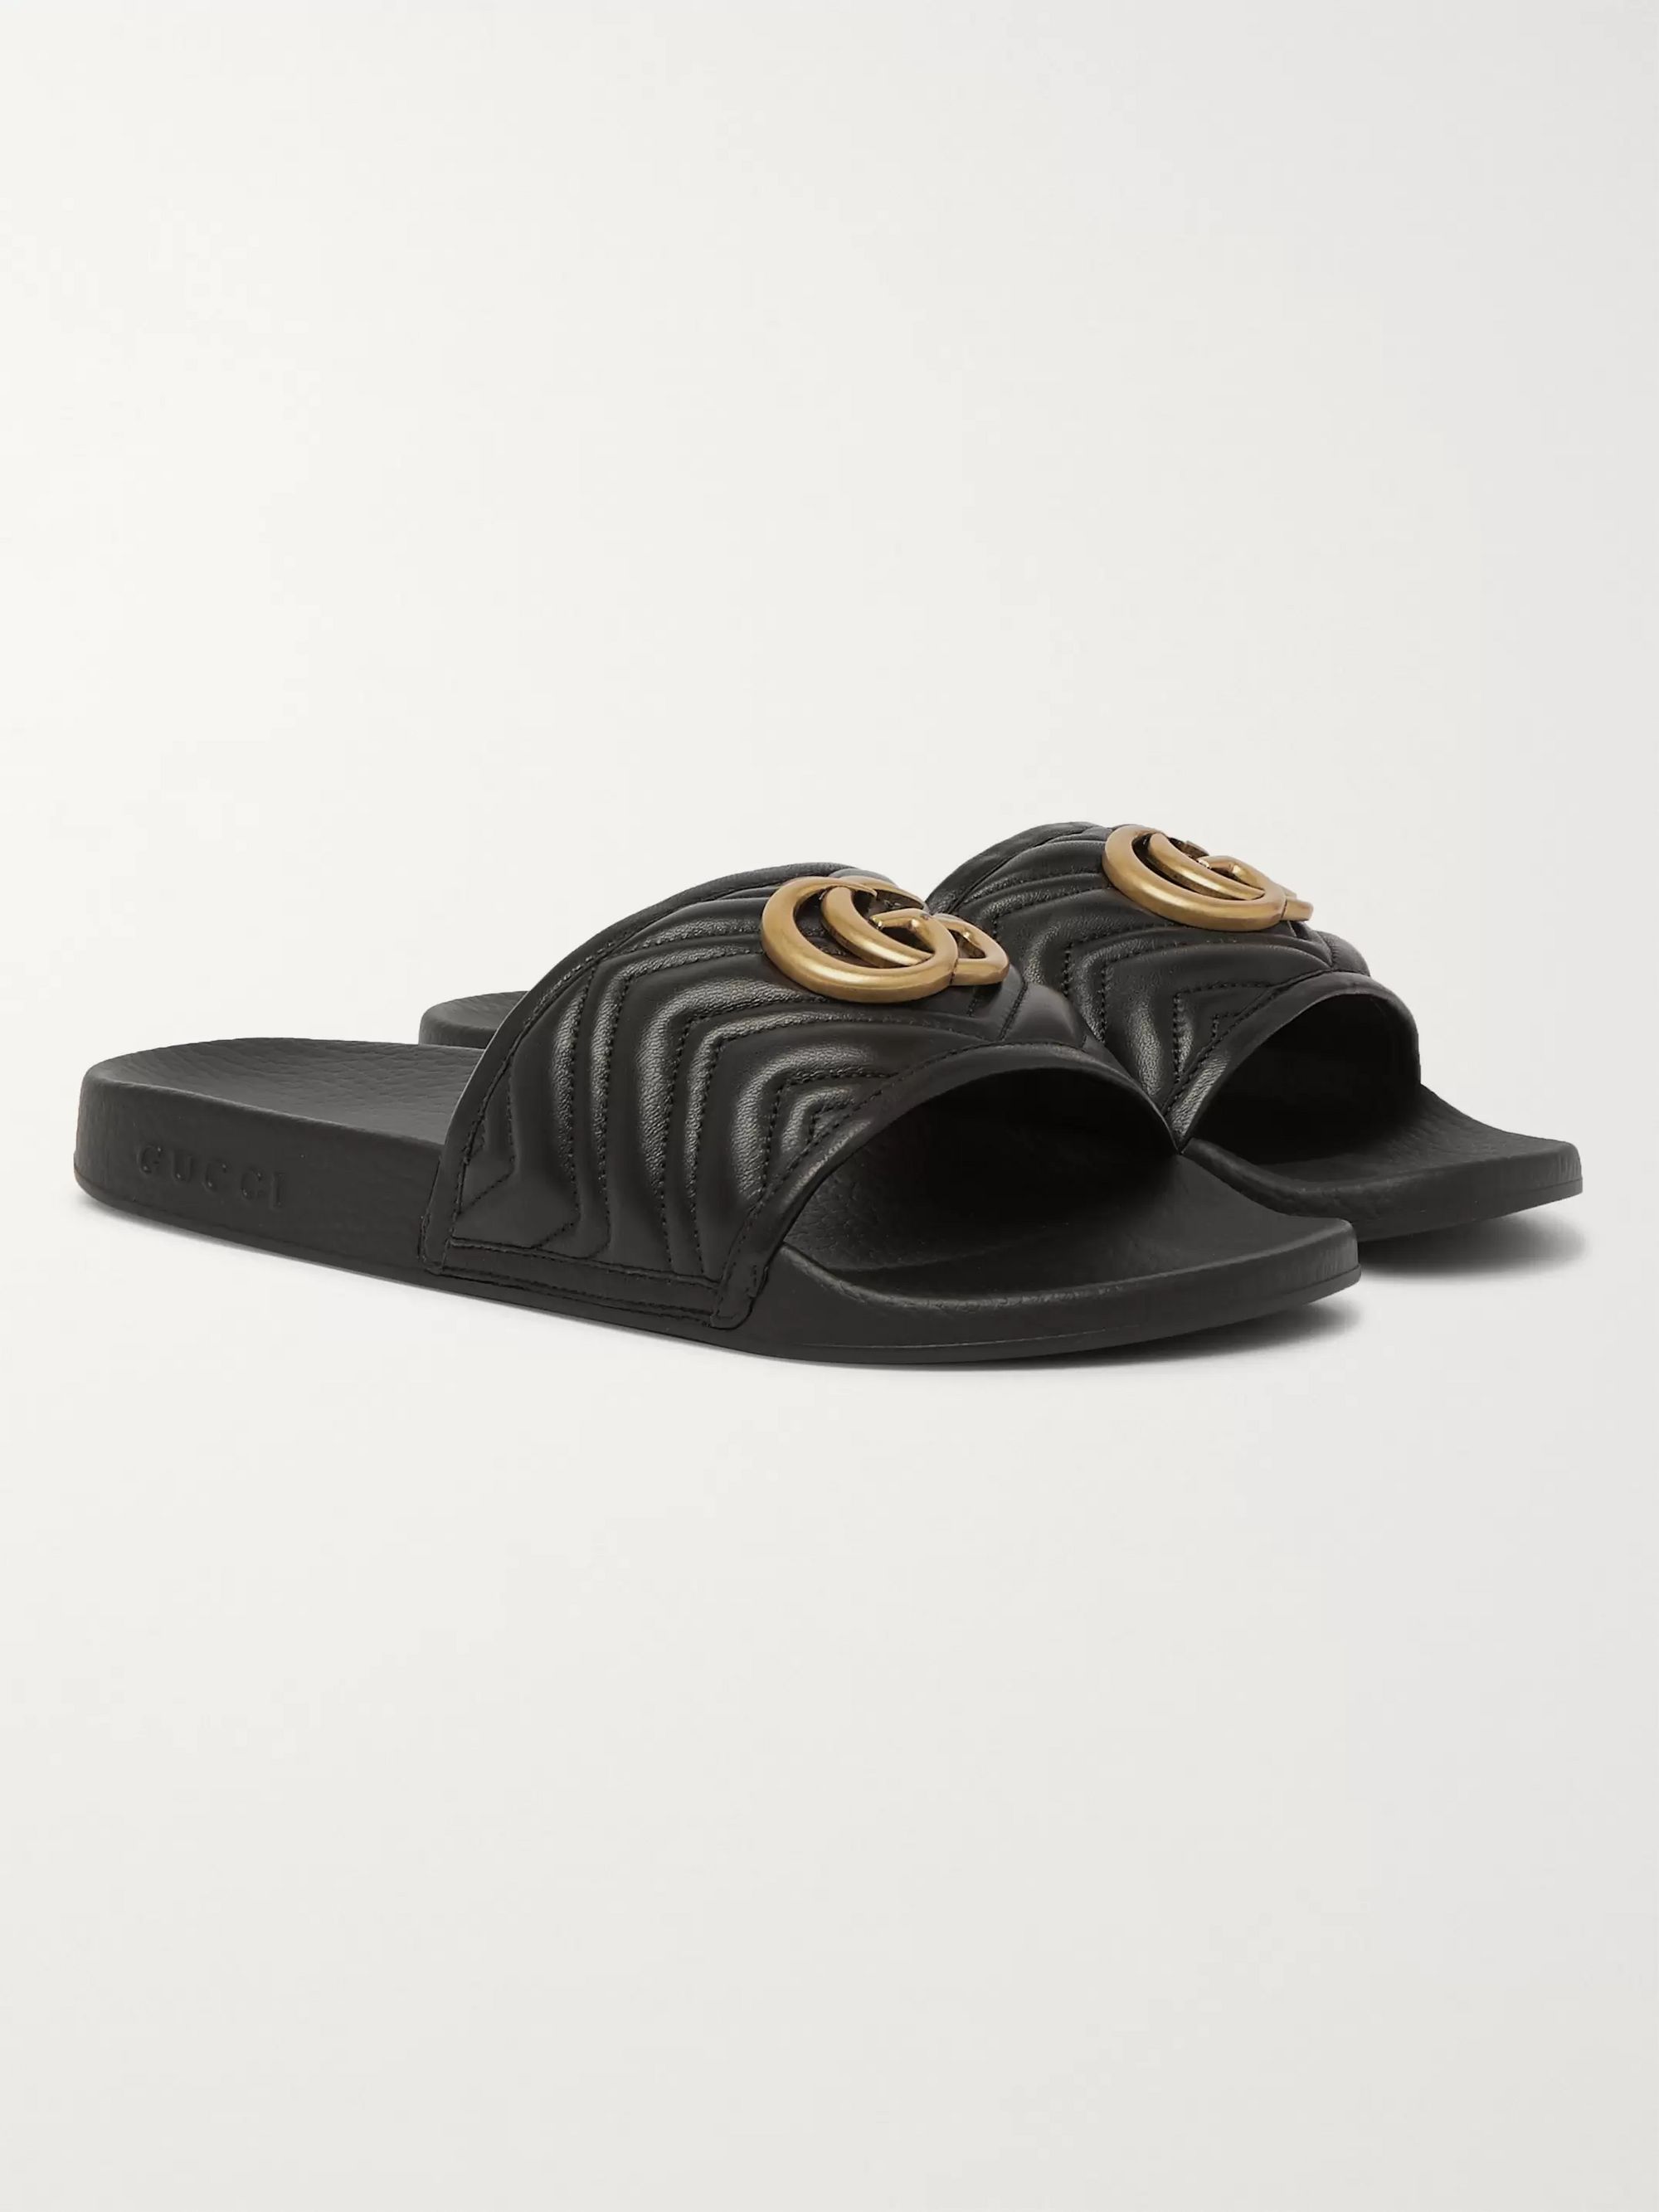 Gucci Black Leather Slides Hot Sale, 57% OFF | www.emanagreen.com